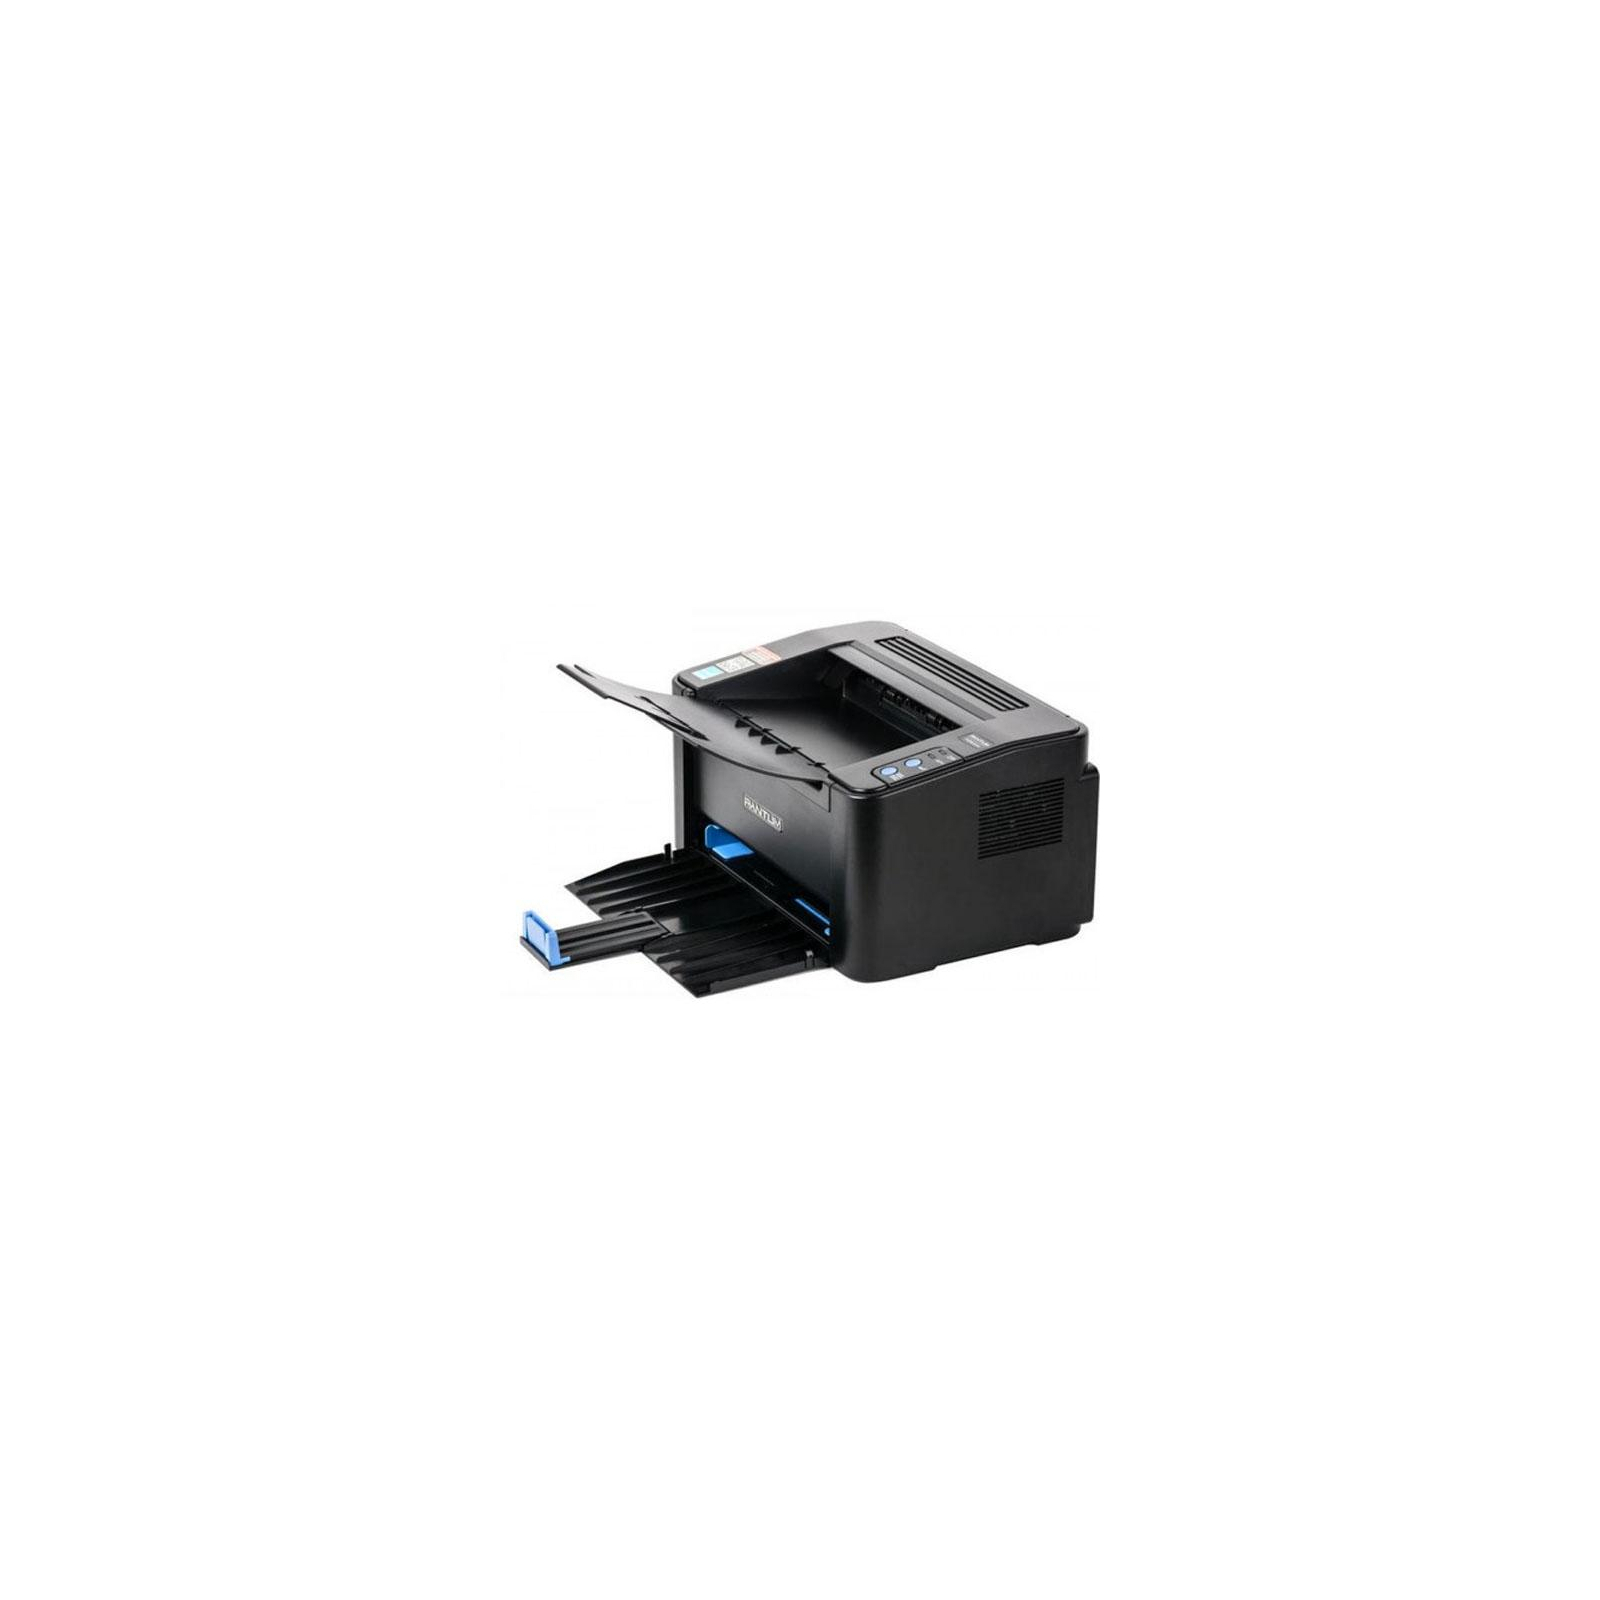 Лазерный принтер Pantum P2500W с Wi-Fi (P2500W) изображение 4